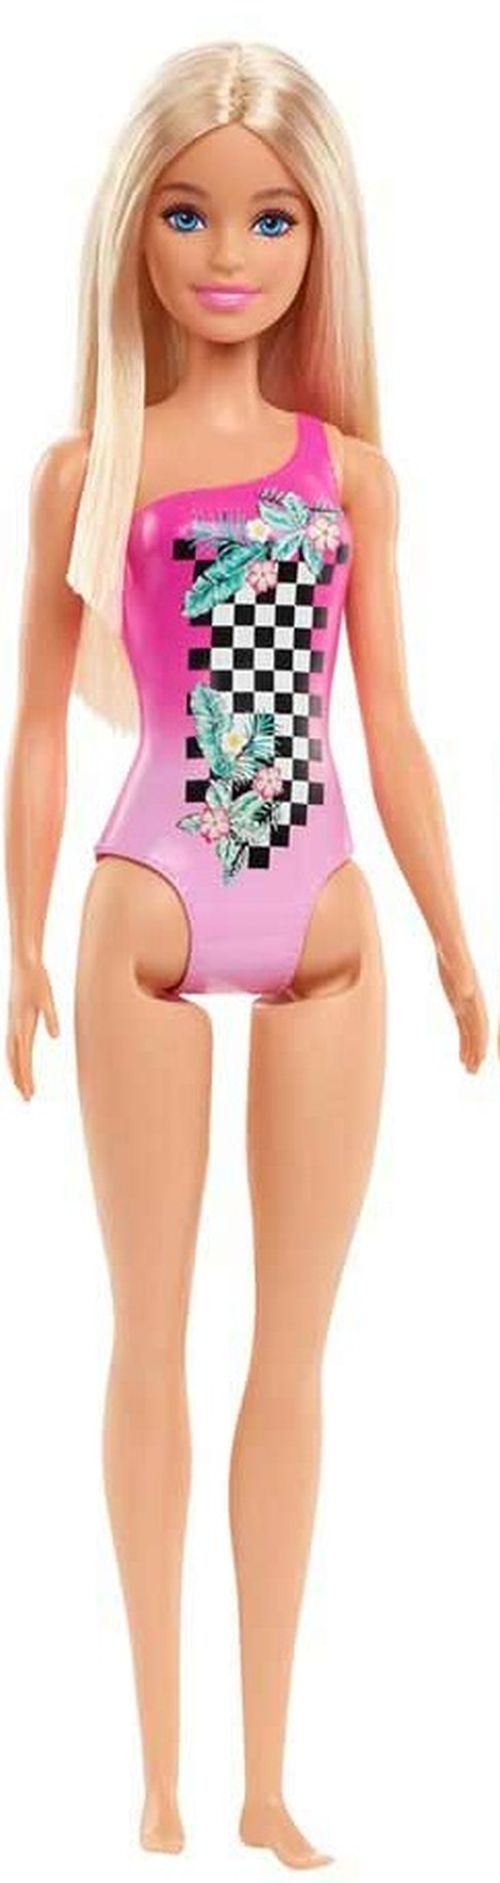 MATTEL Barbie Beach Doll In Pink Swimsuit - 